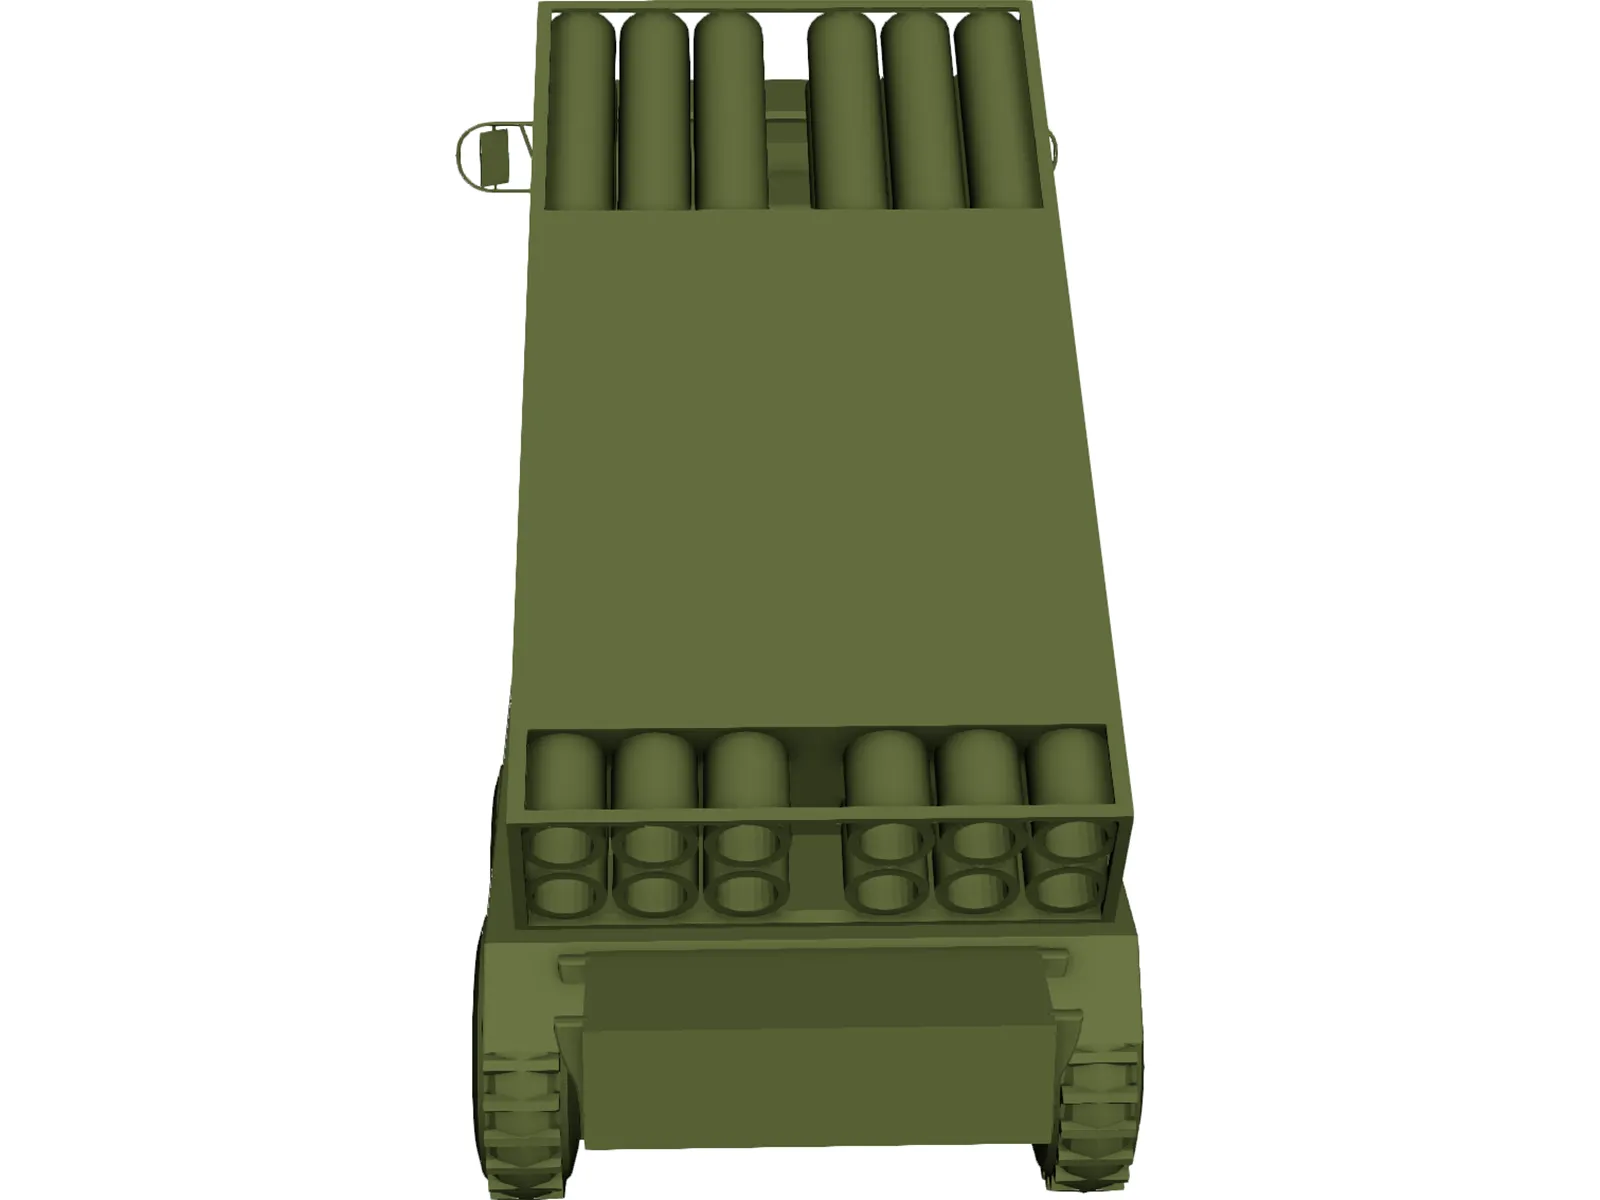 US HIMARS MLRS [+M977 Hemmt] 3D Model